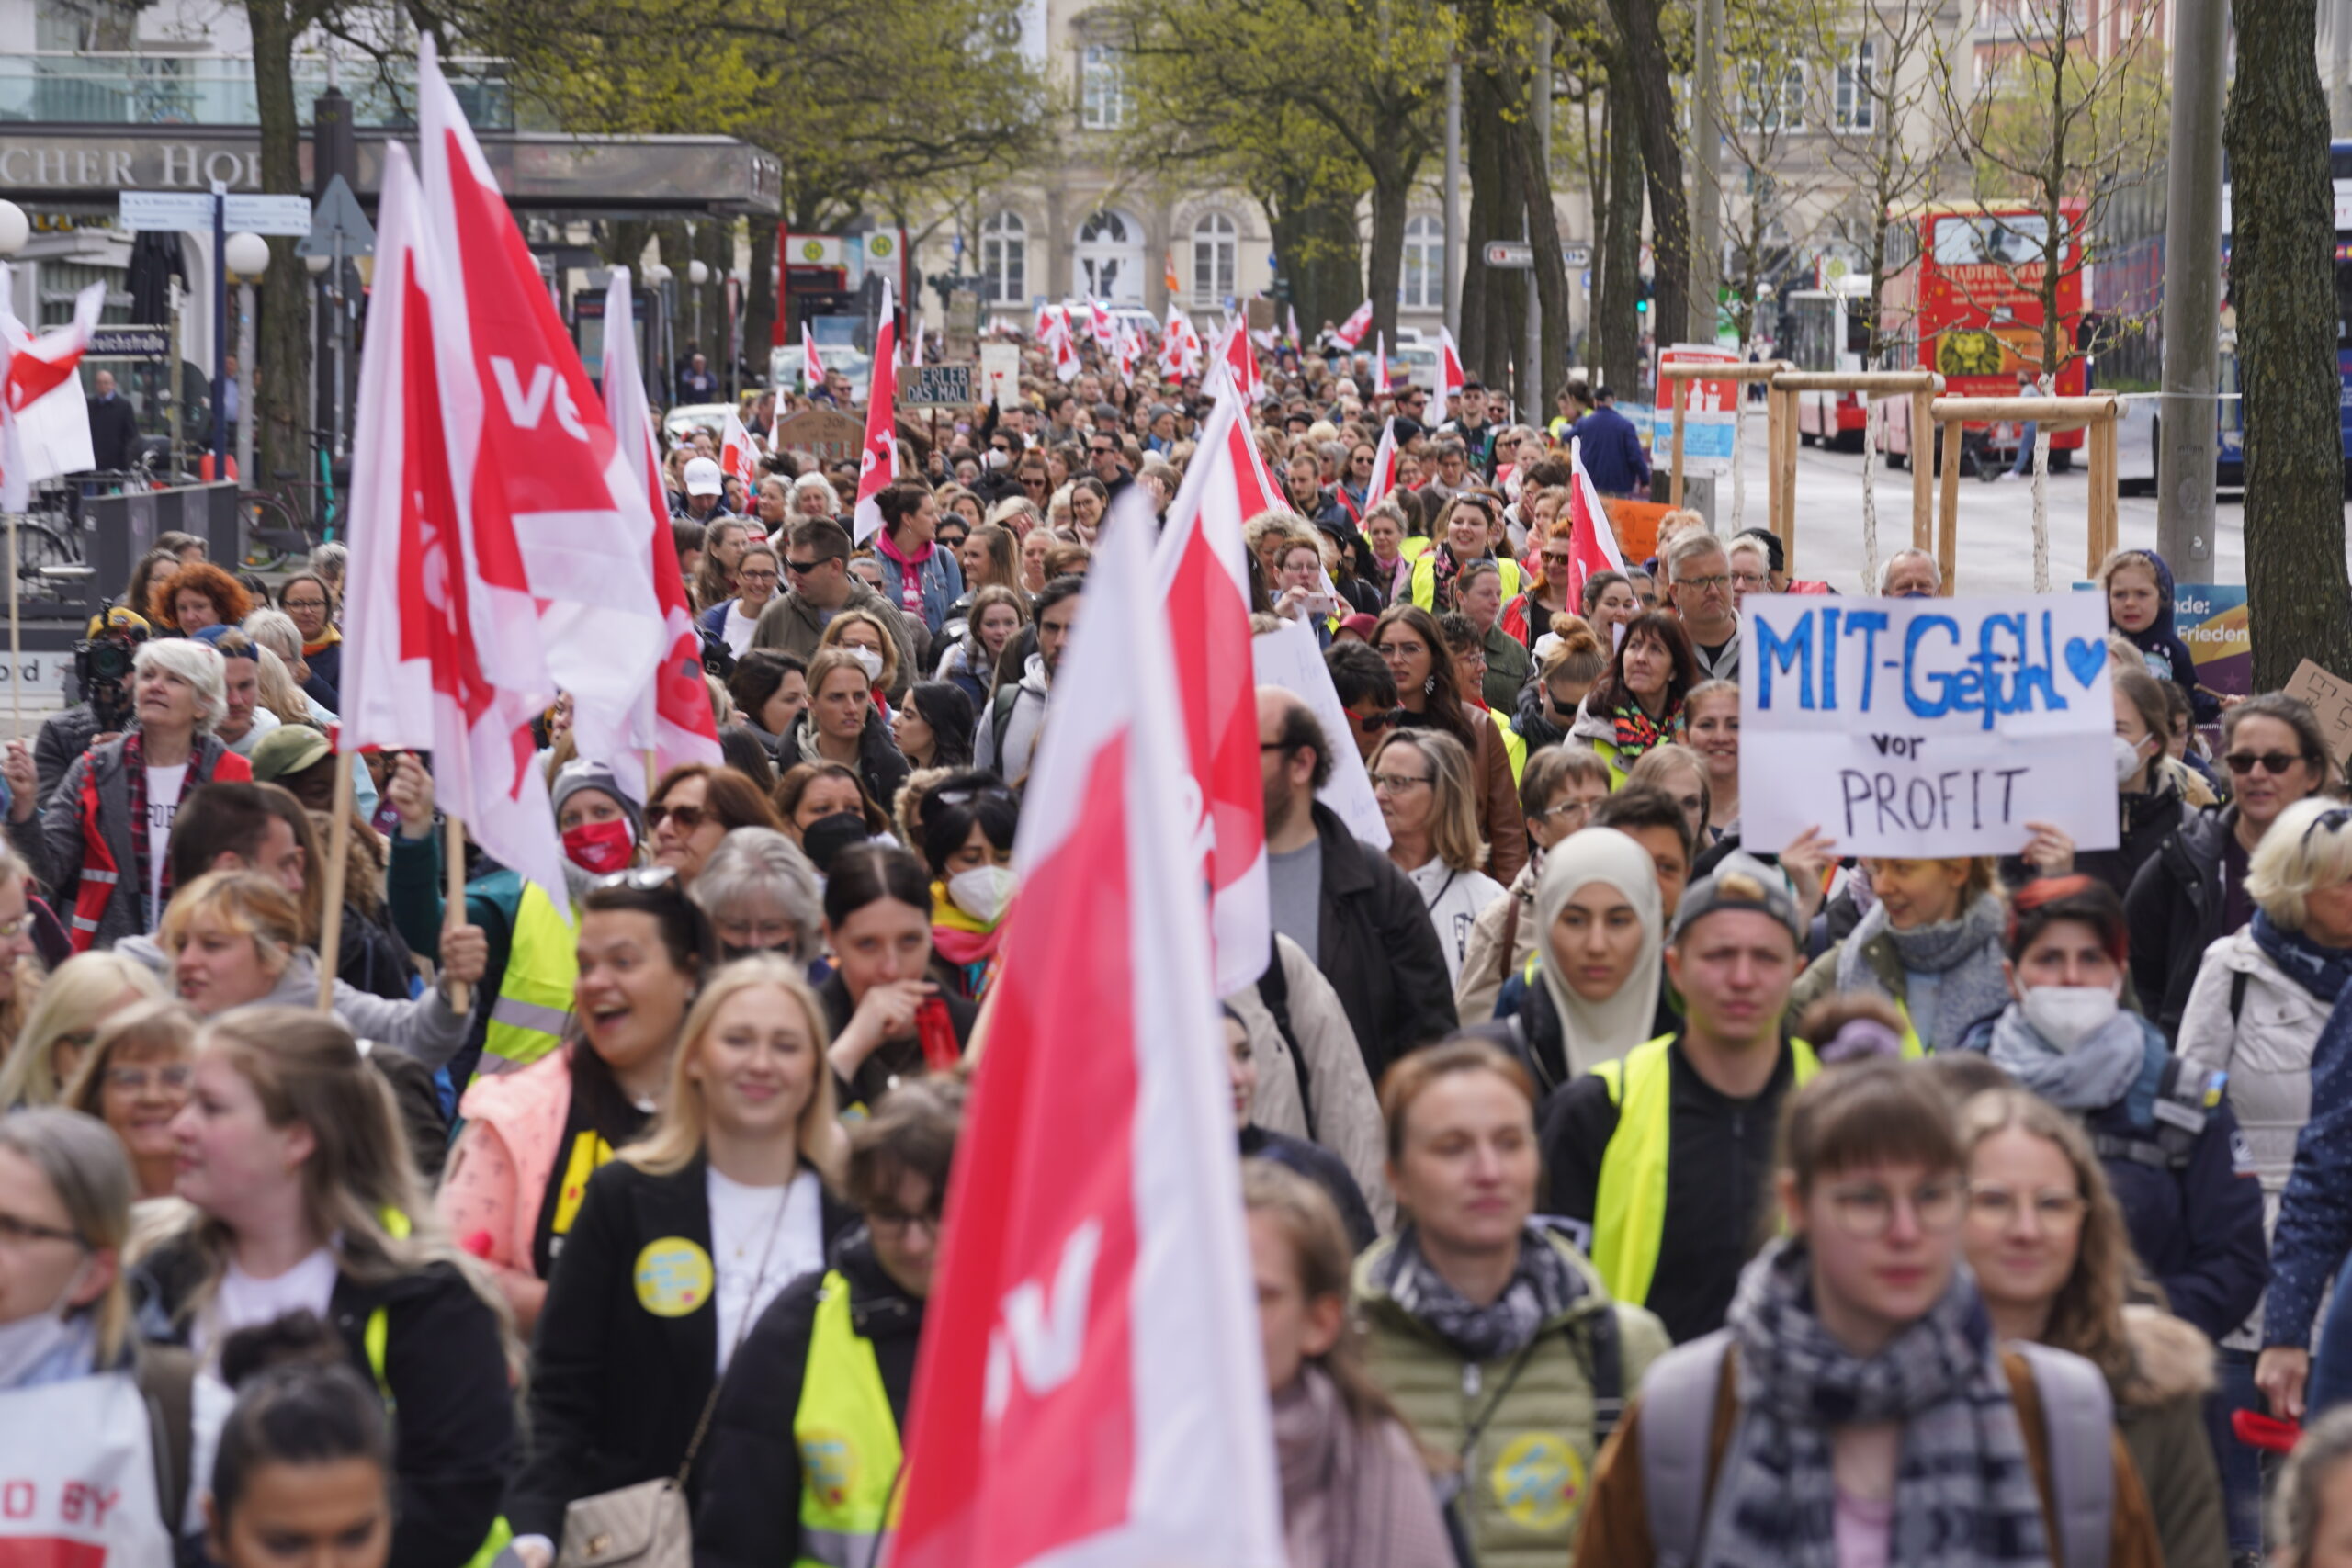 Erzieher:innen demonstrierten am Mittwoch in Hamburg für bessere Arbeitsbedingungen und mehr Geld.